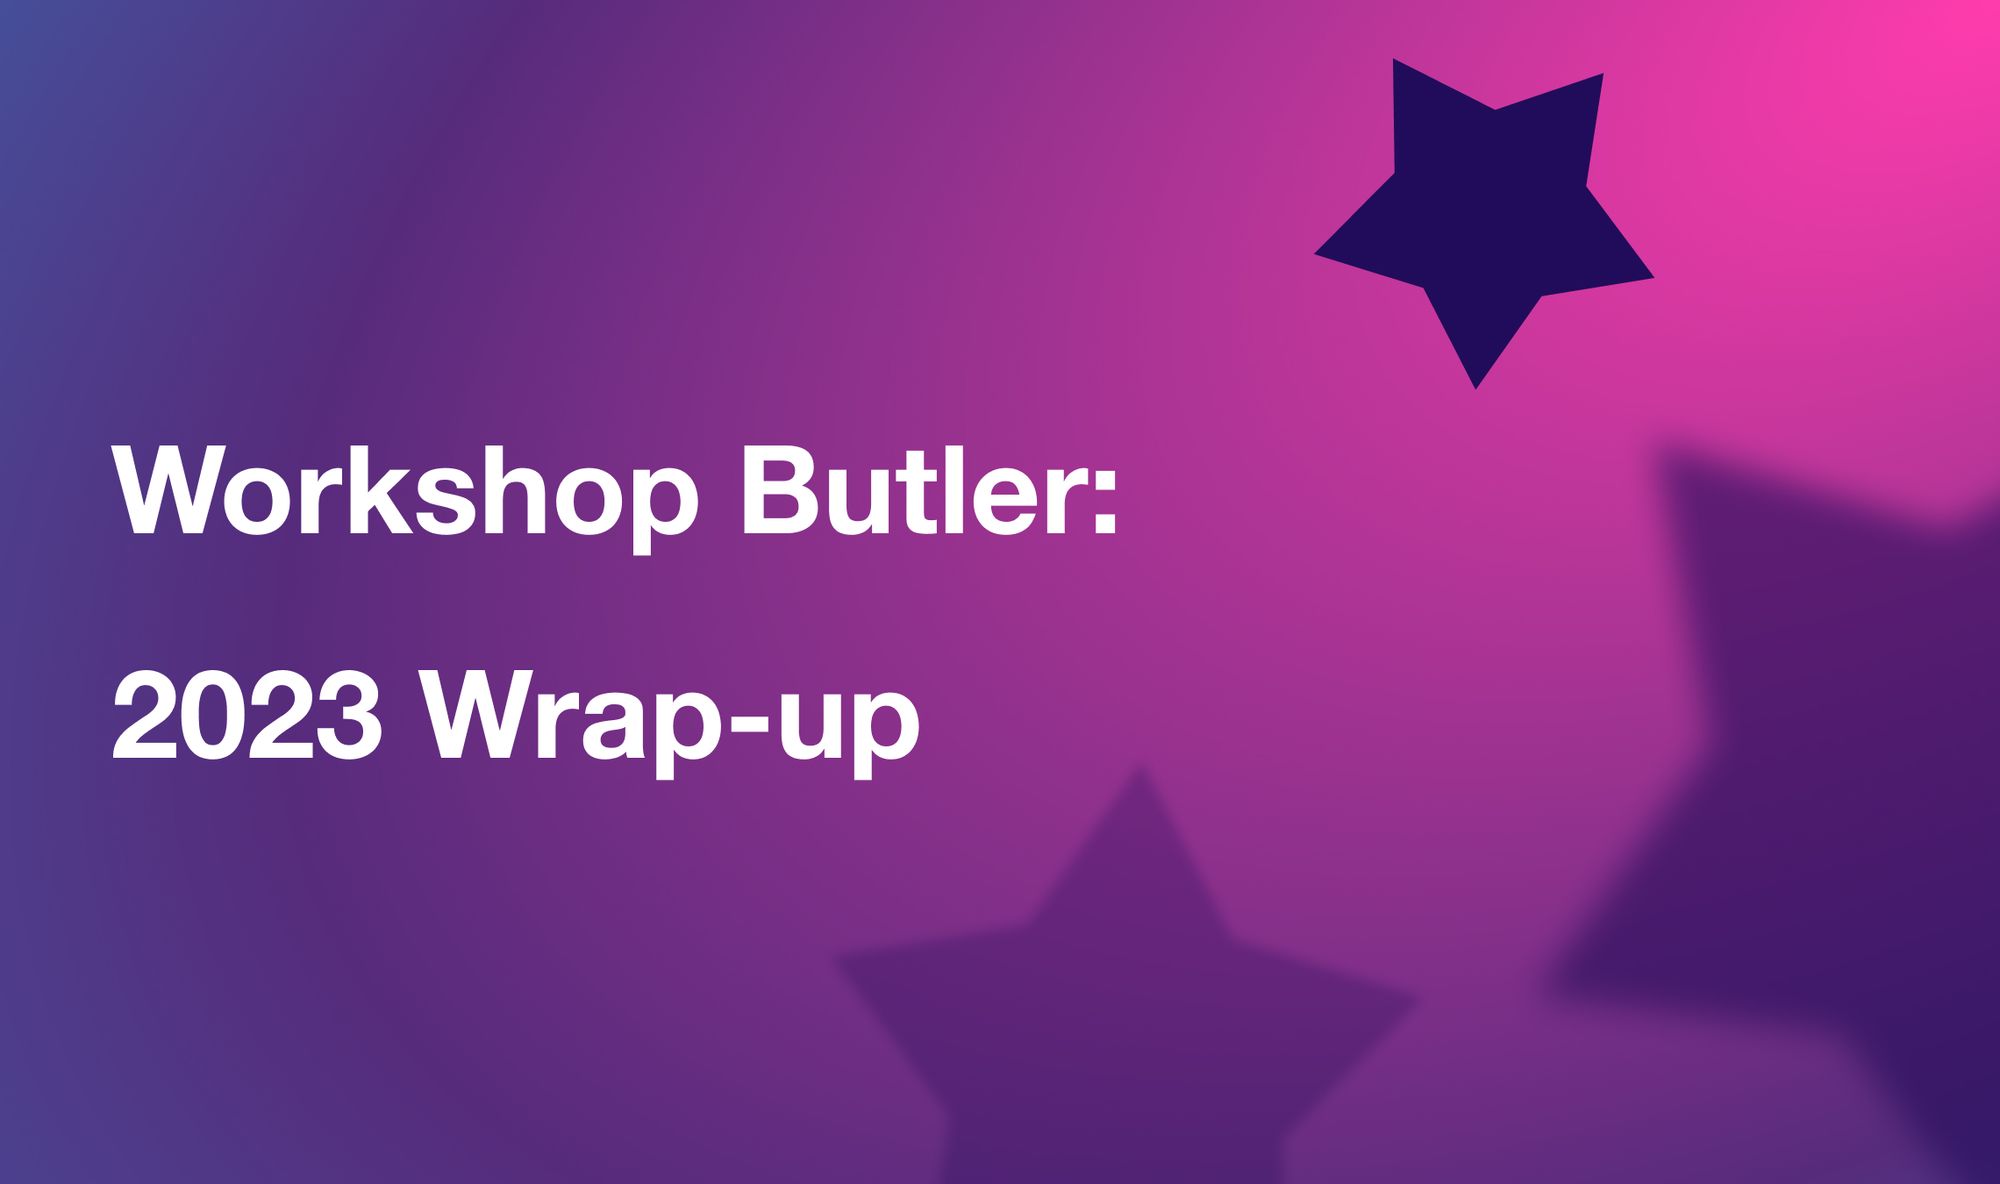 Workshop Butler: 2023 Wrap-up